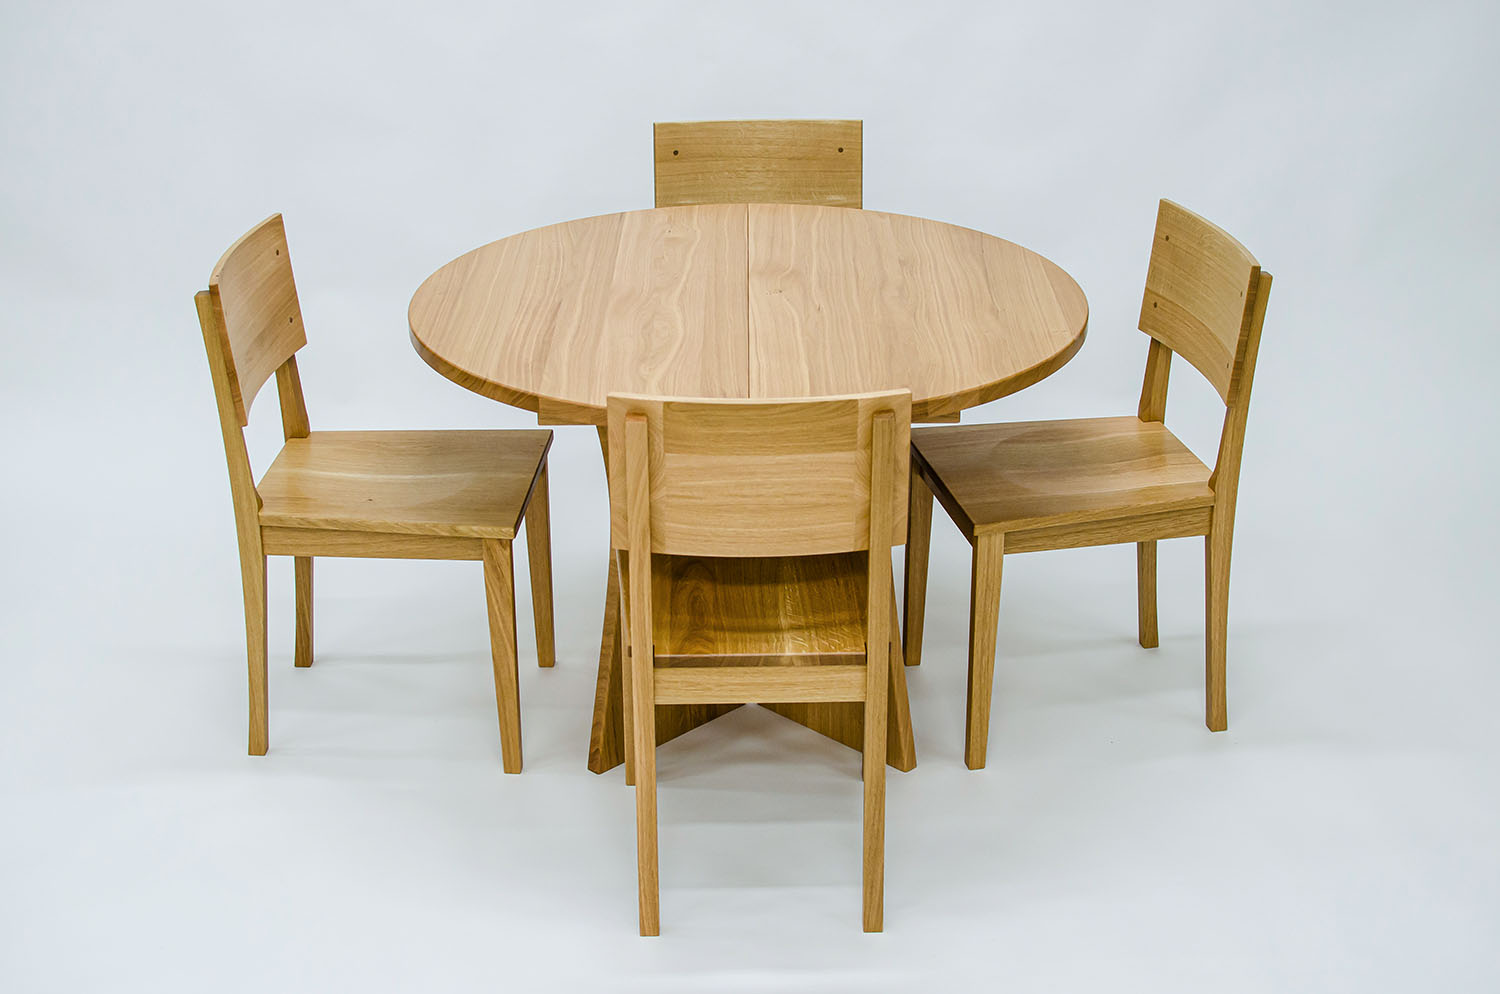 Runder, ausziehbarer Esstisch aus massiver geölter Eiche, mit passenden Stühlen - die Schreiner von Freisinn Möbel entwerfen und bauen deinen perfekten Tisch in und um Biberach